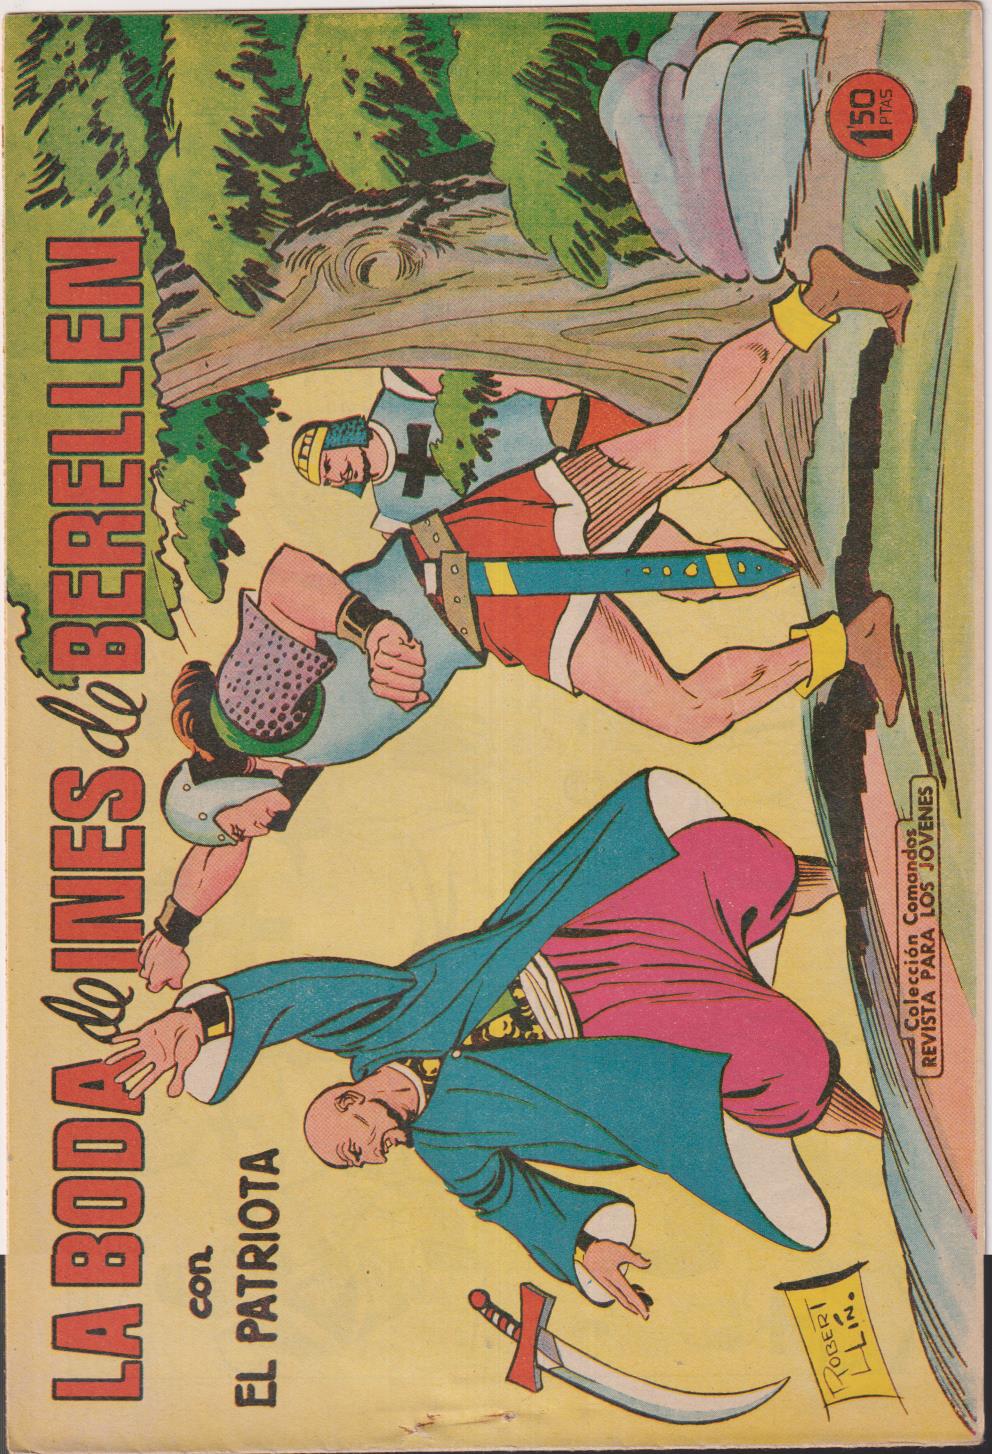 El Patriota. Colección Completa, 18 ejemplares. Valenciana 1960. MUY ESCASA ASÍ